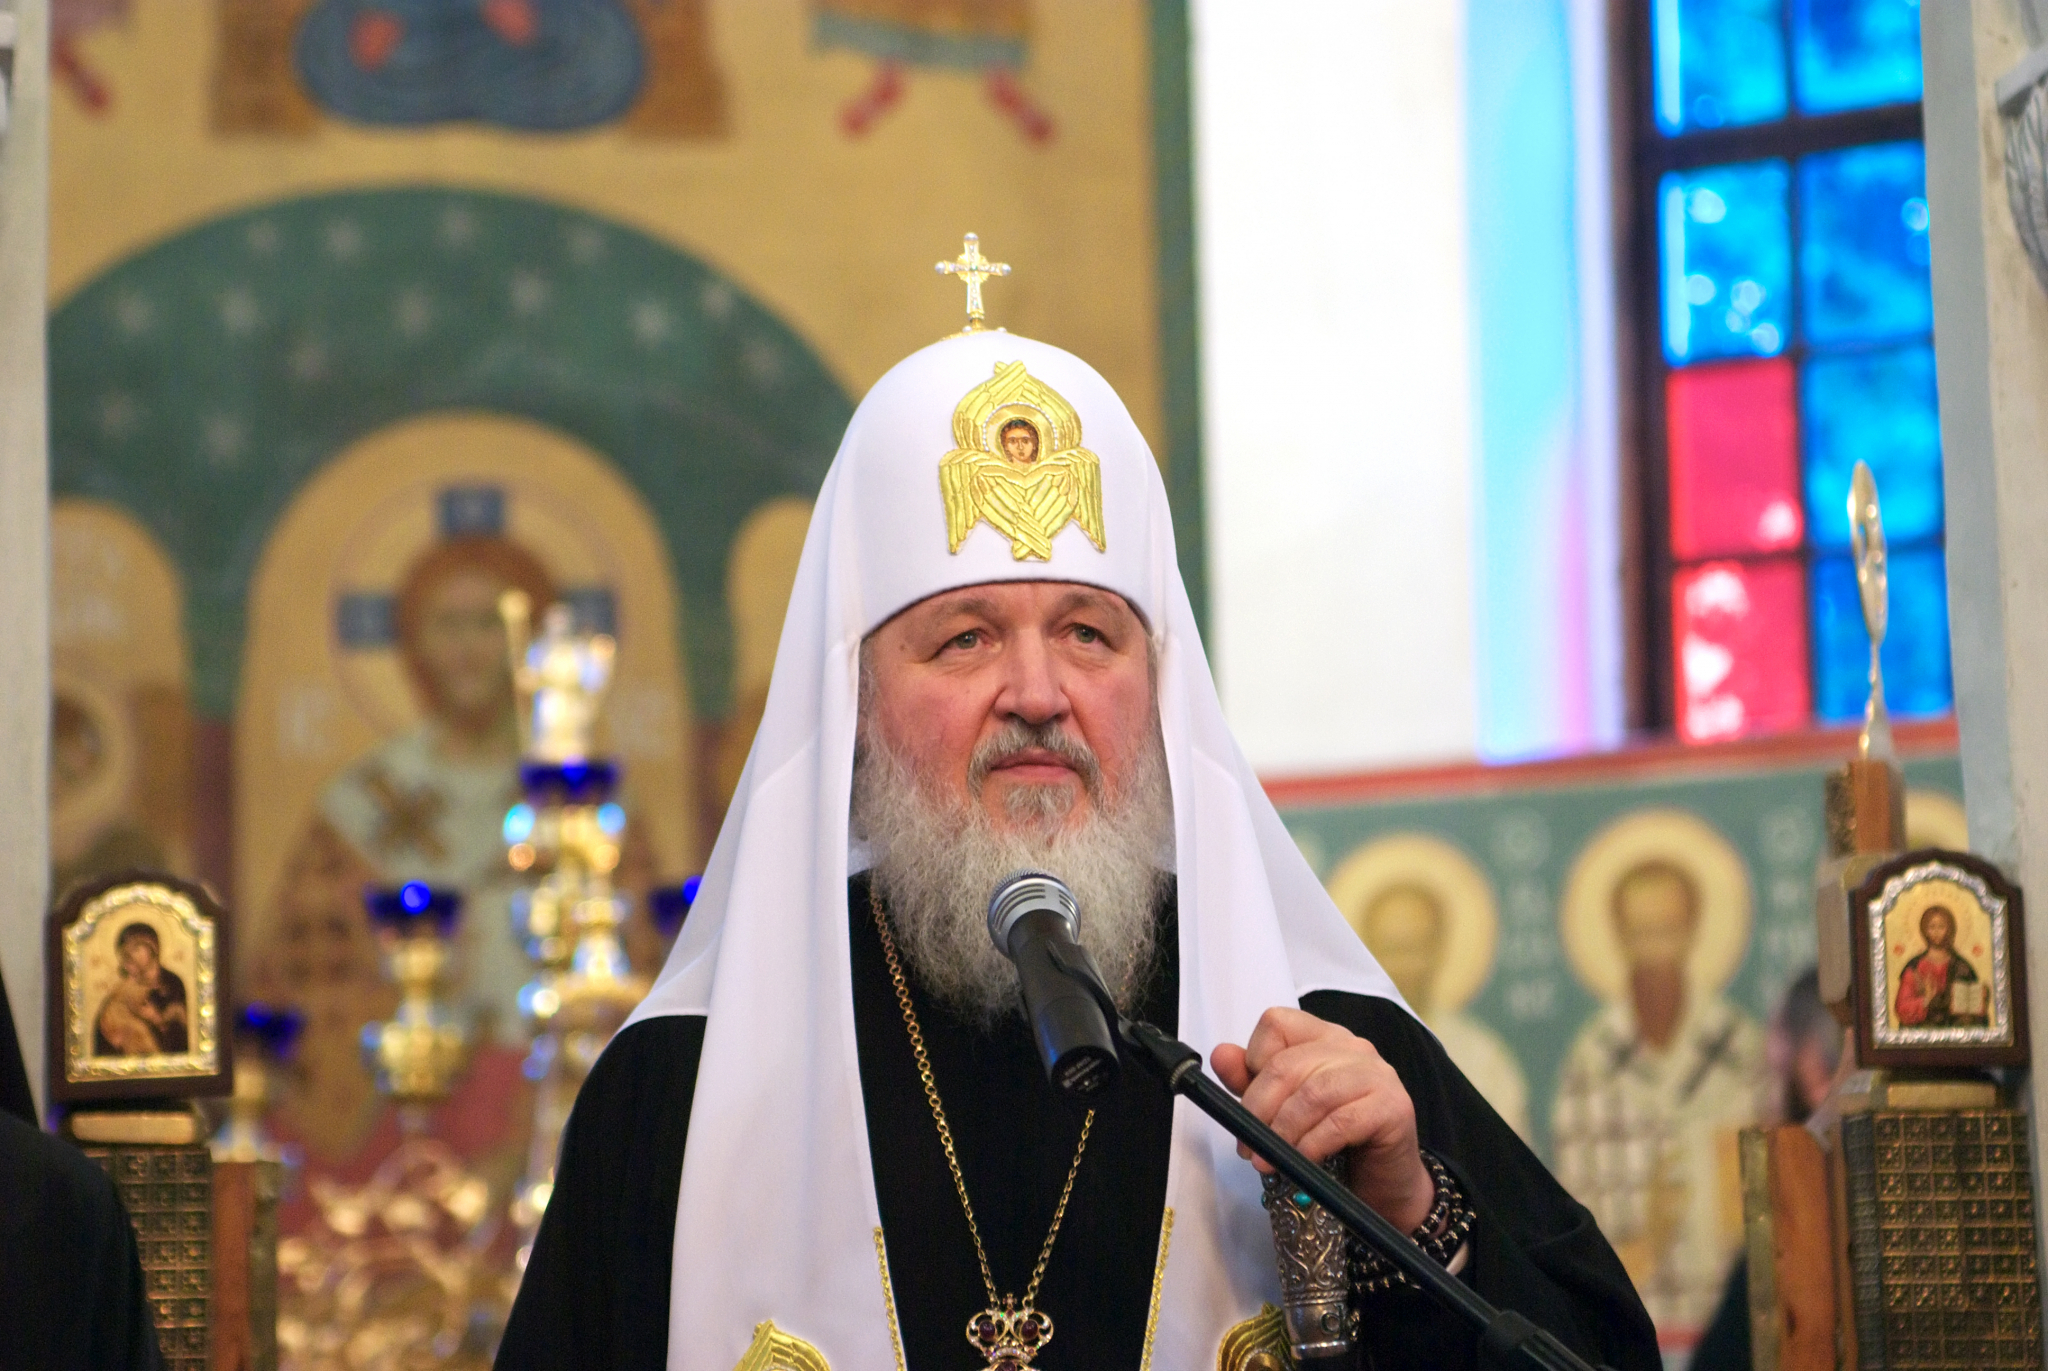 Появилась новая информация о встрече с патриархом Кириллом в Кирове